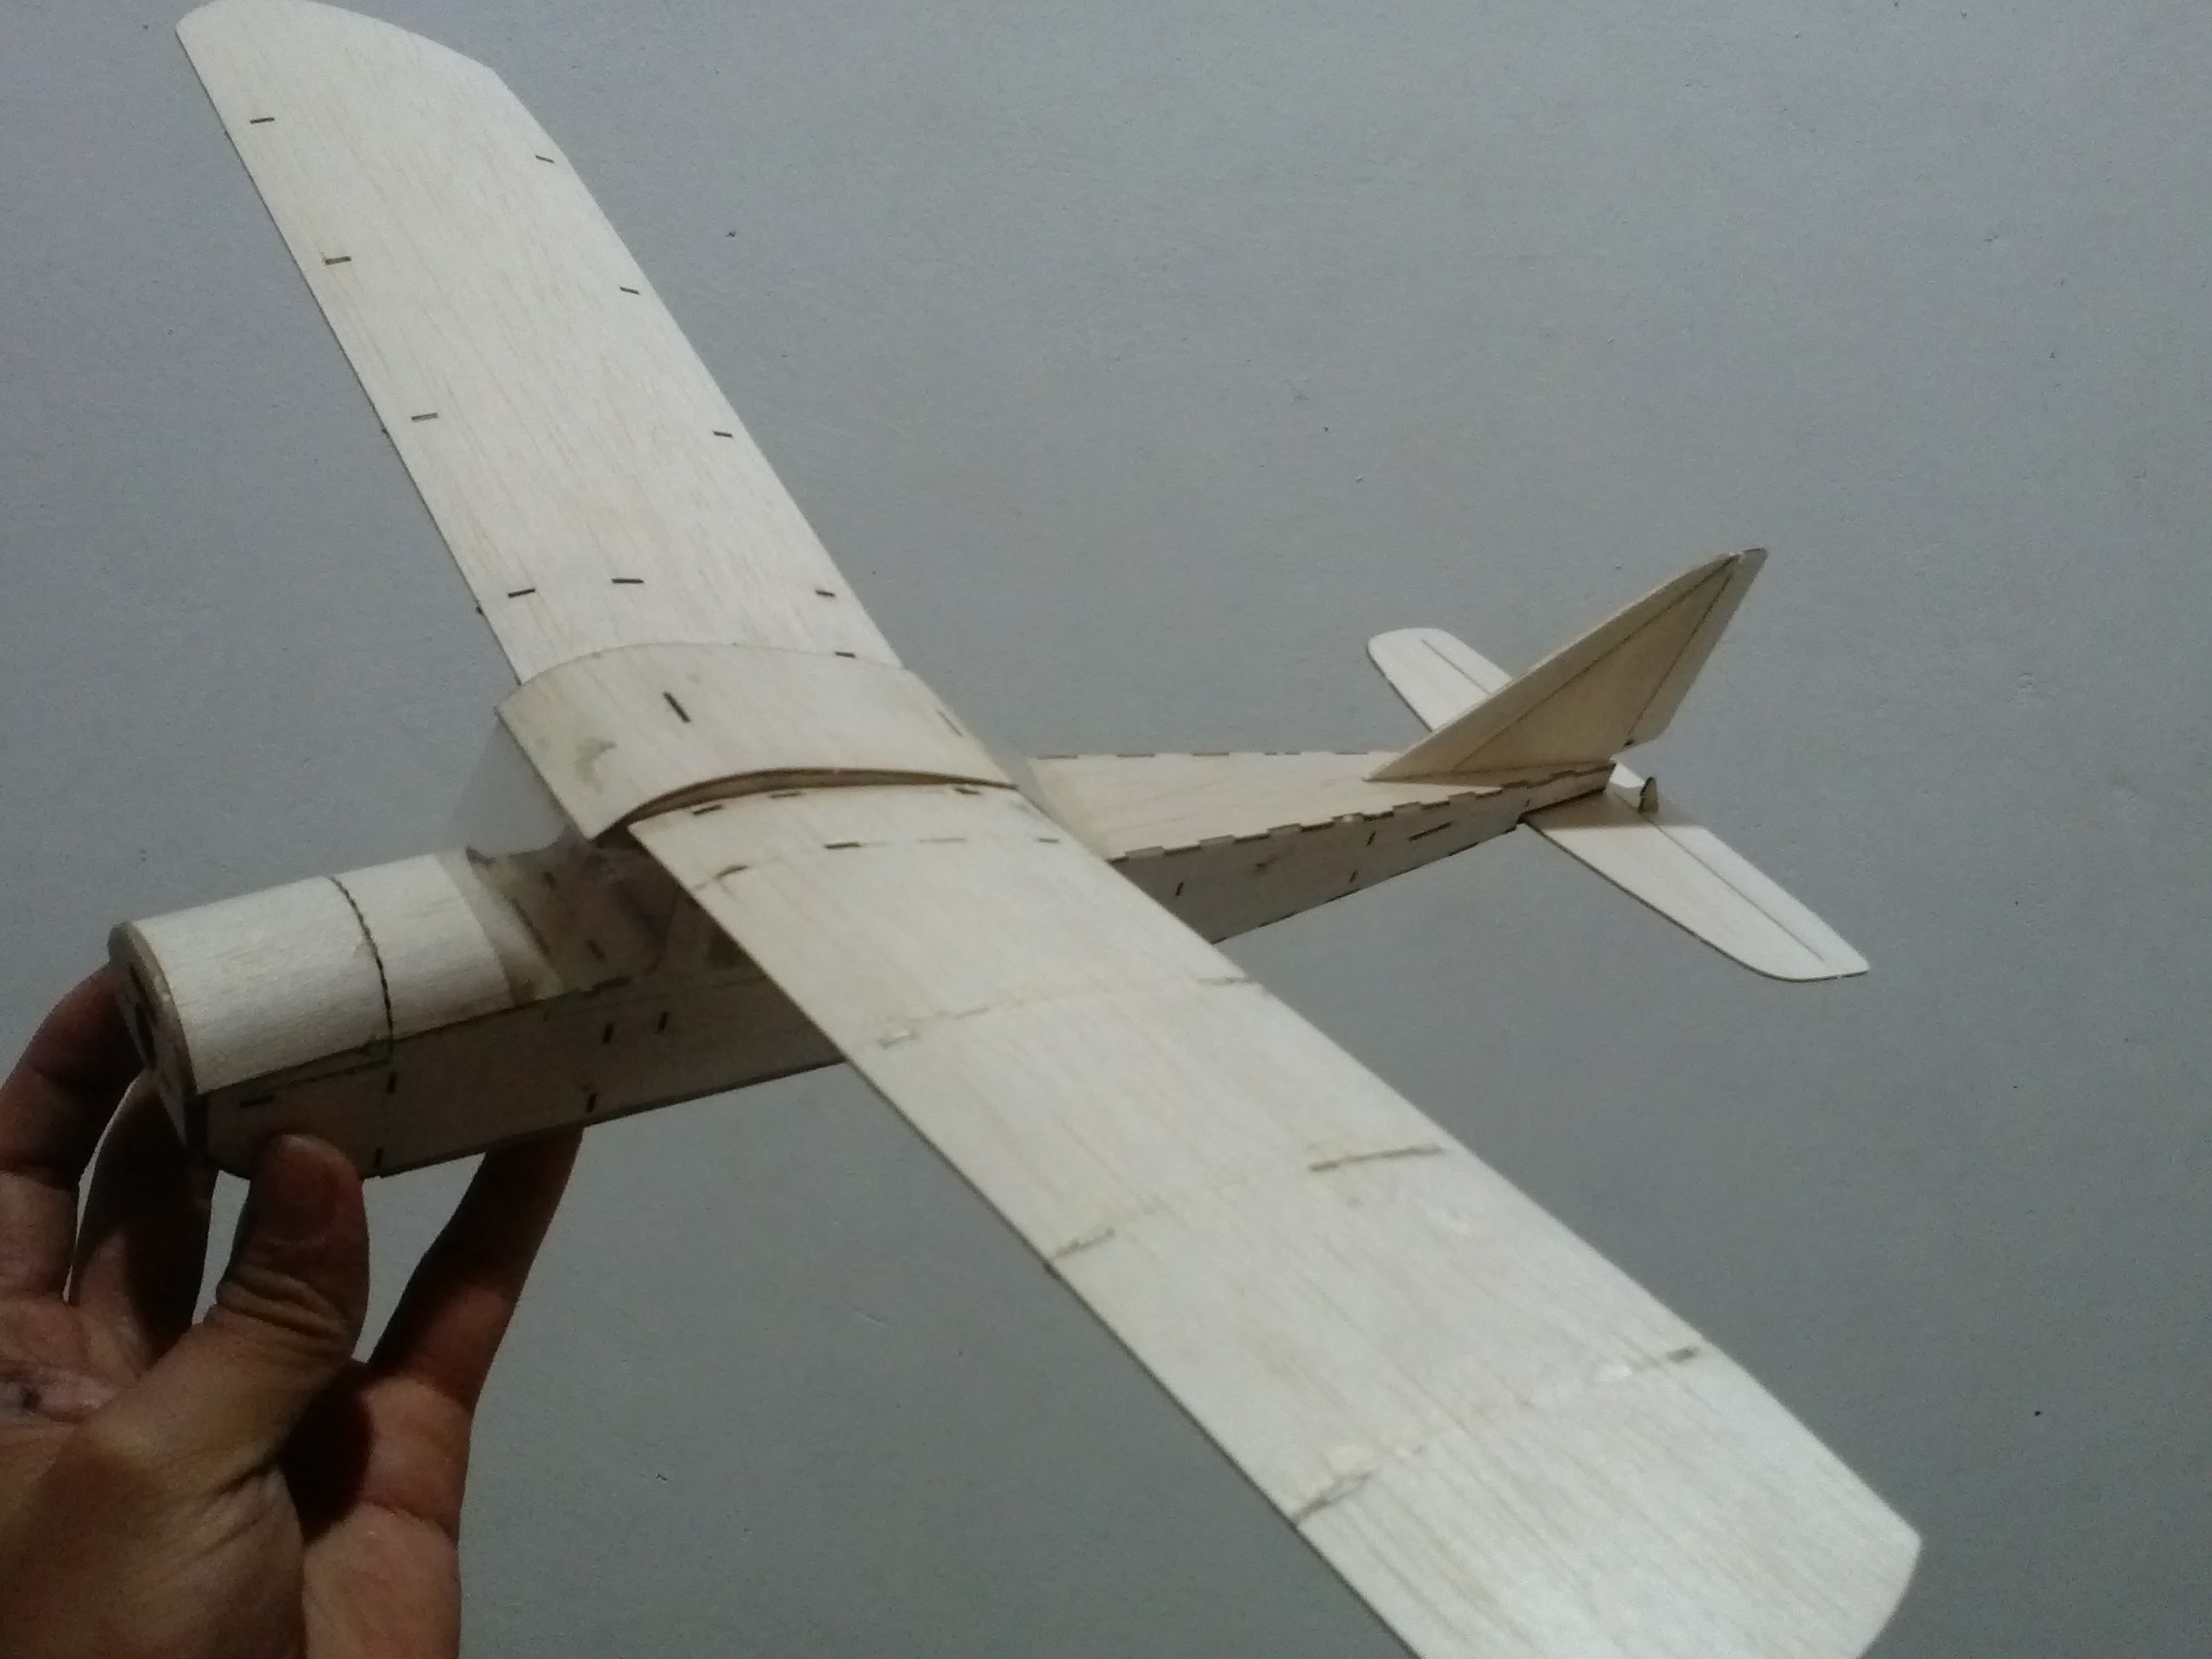 添添小飞机，制作过程，还有自己的小飞机机群，MH370快回来 图纸 作者:飞翔的橡皮筋 3215 